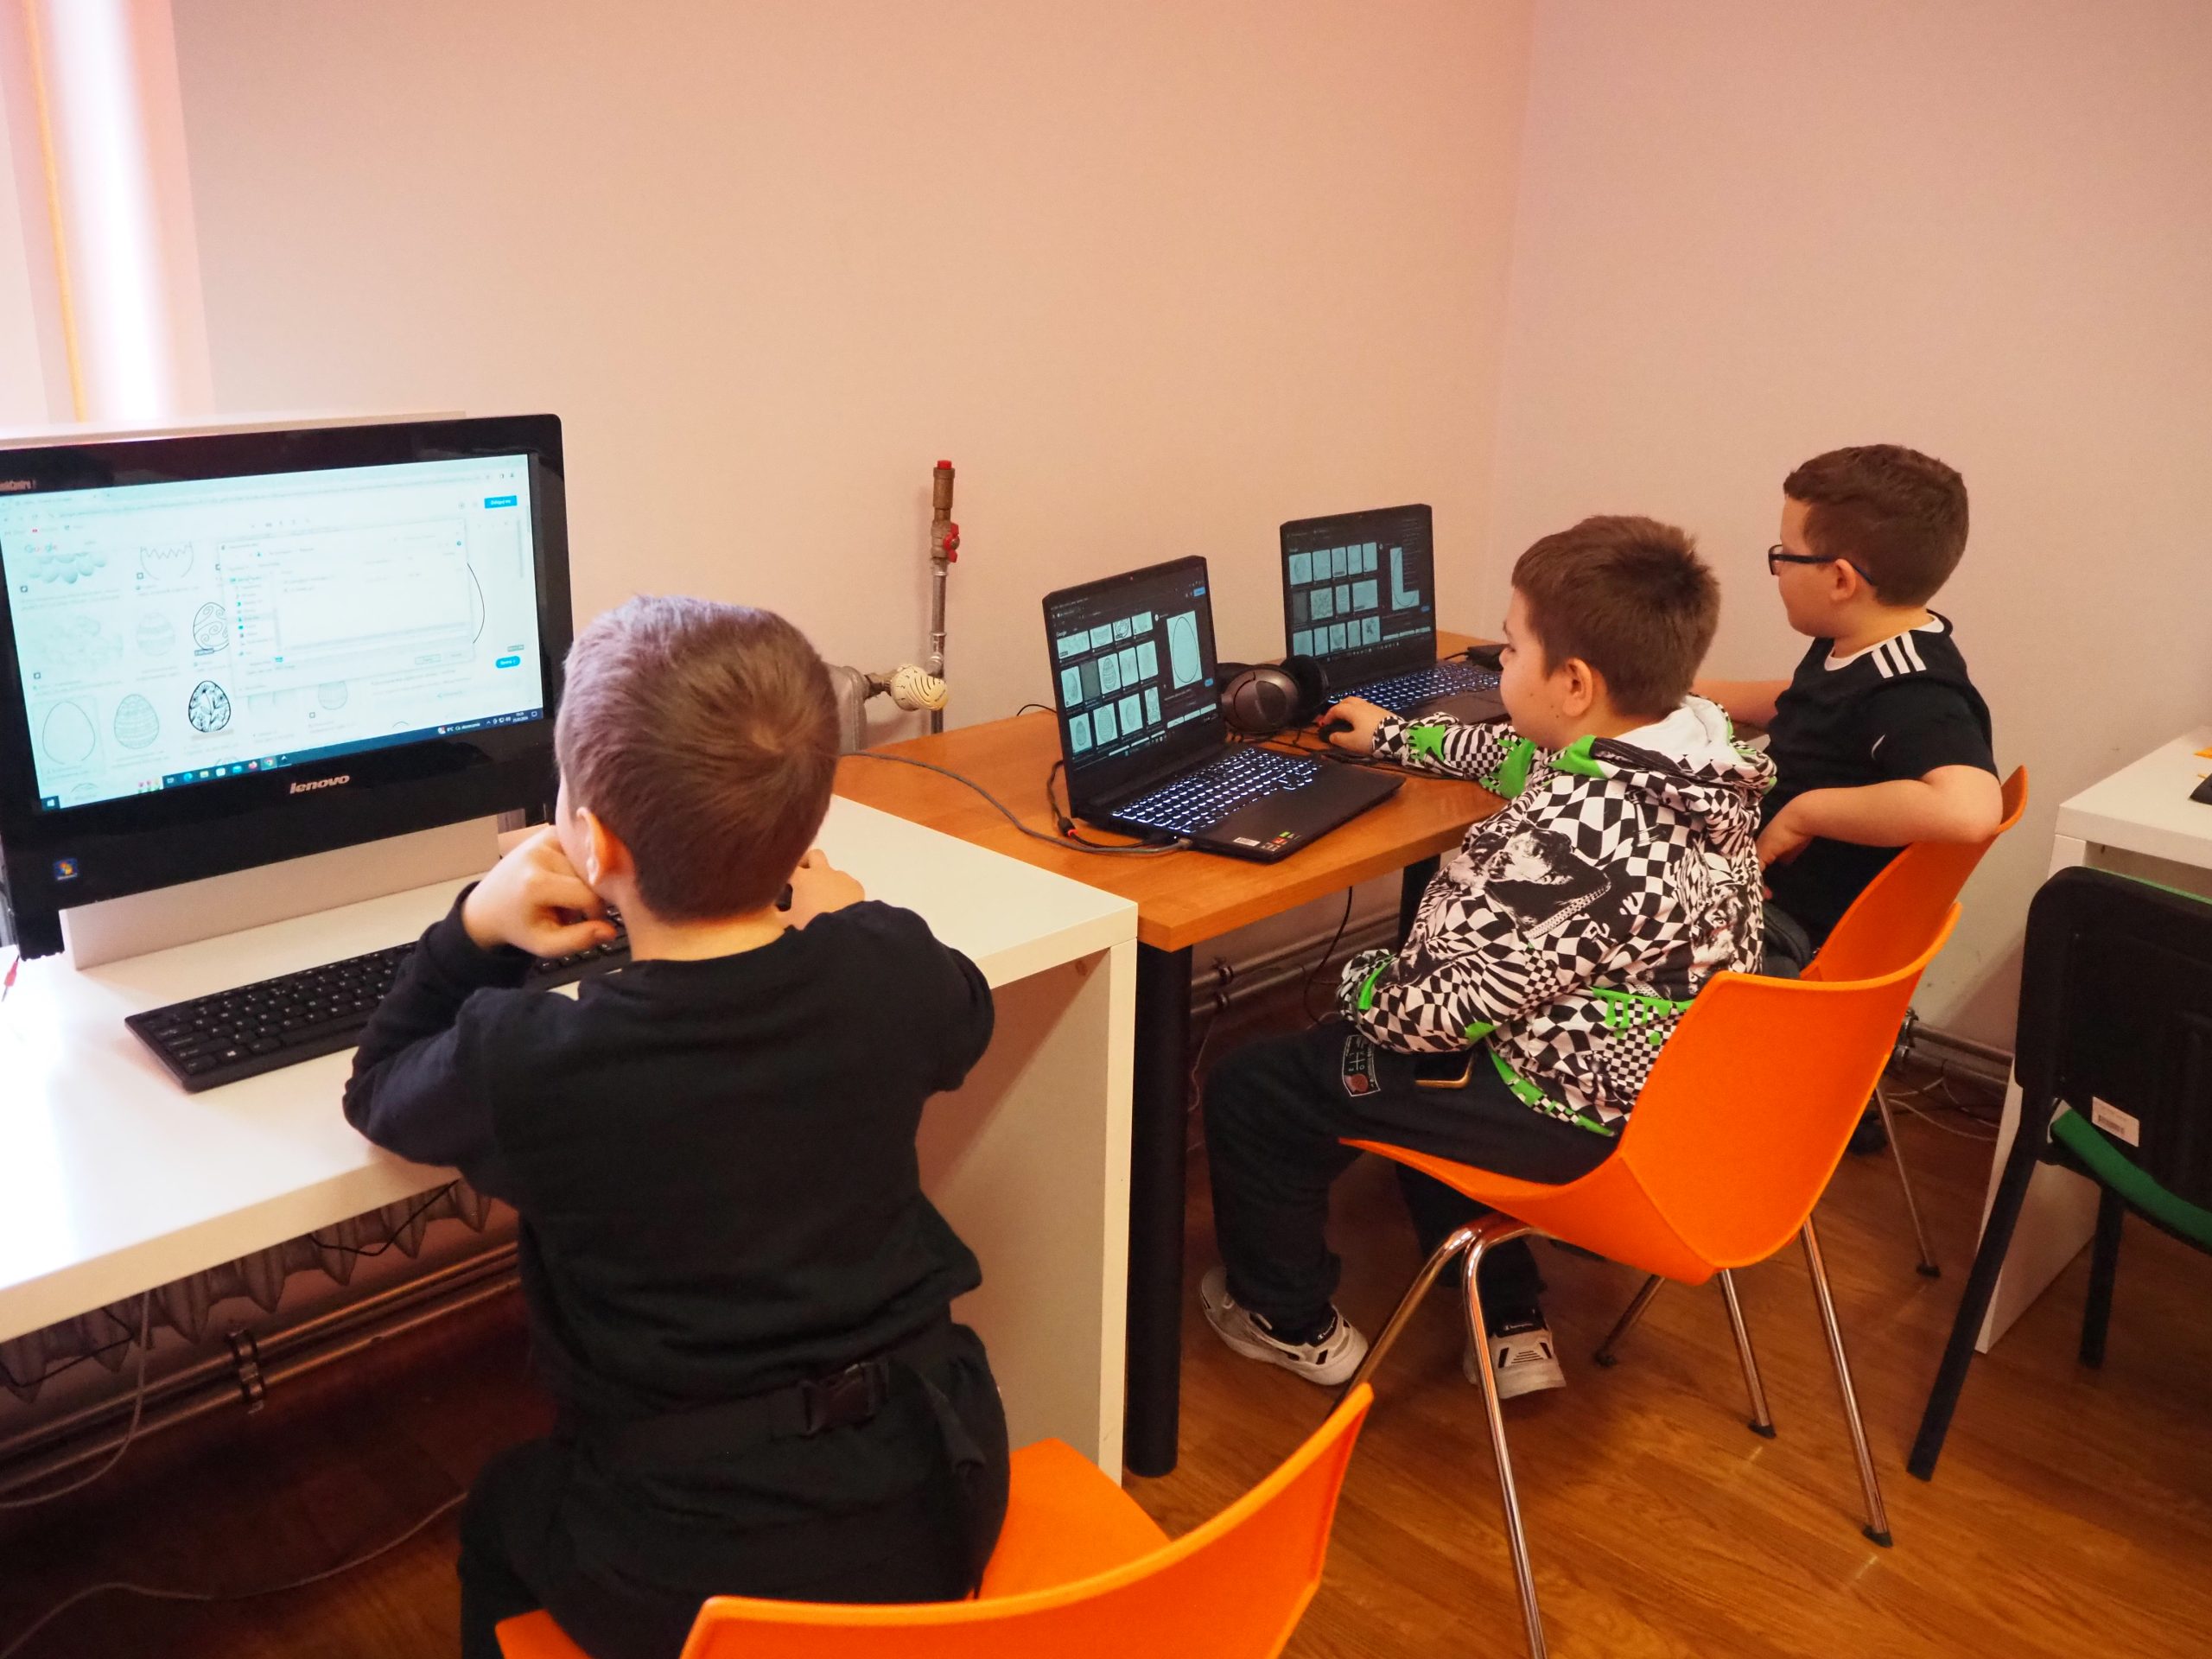 Chłopcy siedzący przy komputerach.